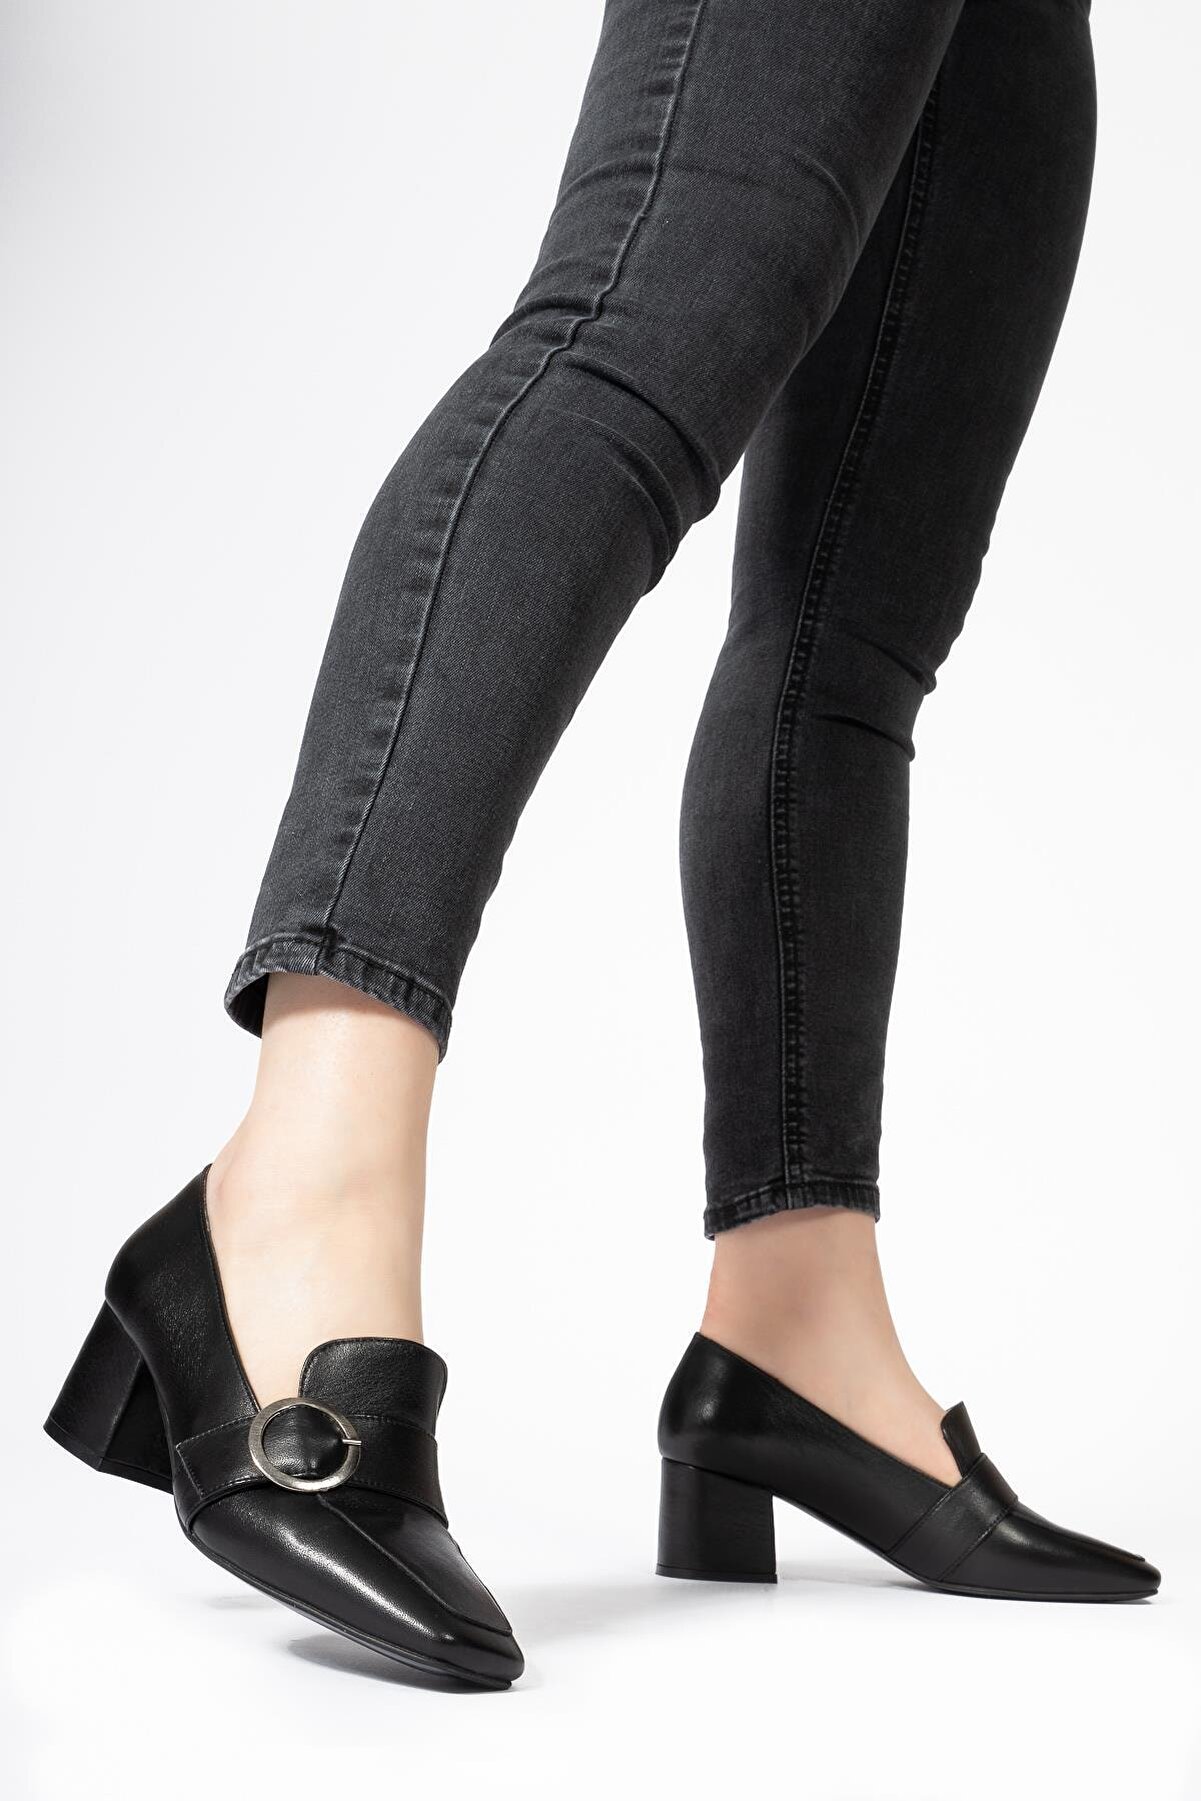 CZ London Hakiki Deri Kadın Kalın Topuklu Ayakkabı Casual Tokalı Loafer